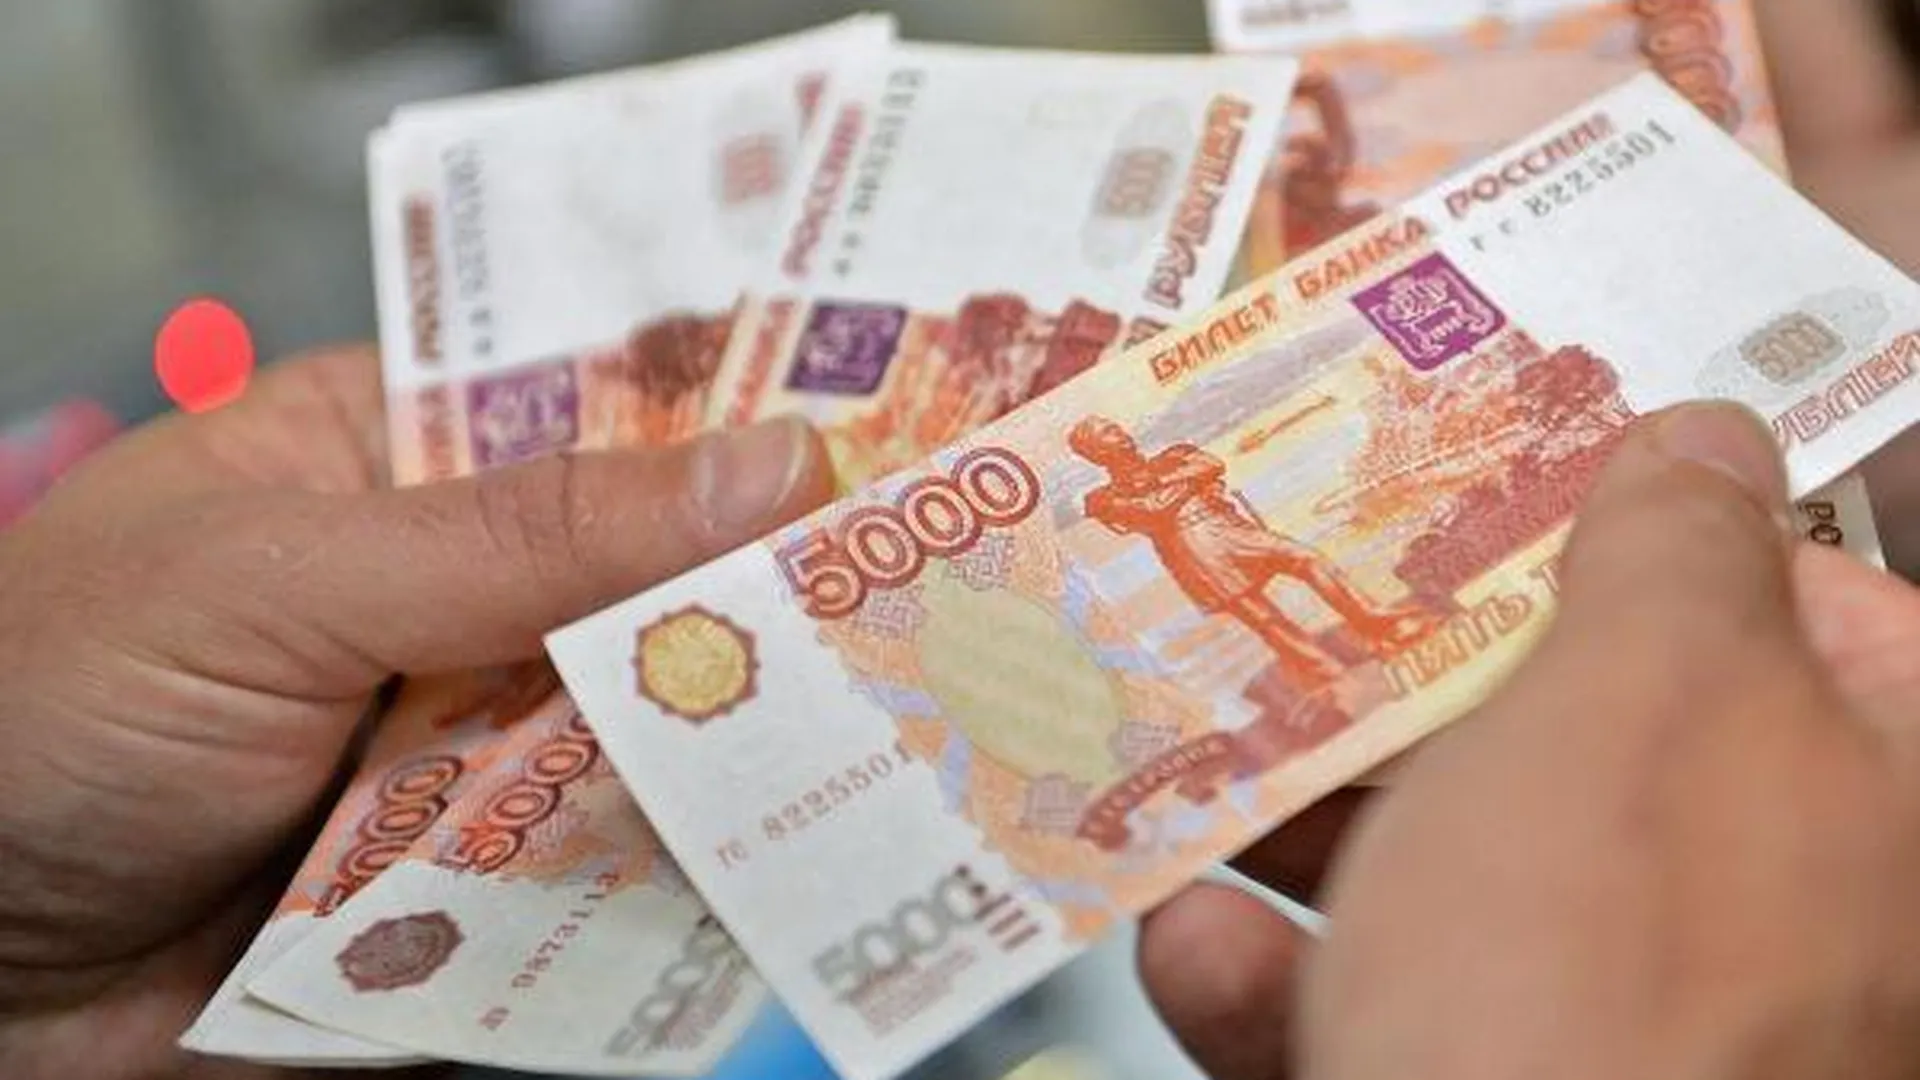 УК в Солнечногорском районе оштрафовали почти на 800 тыс руб